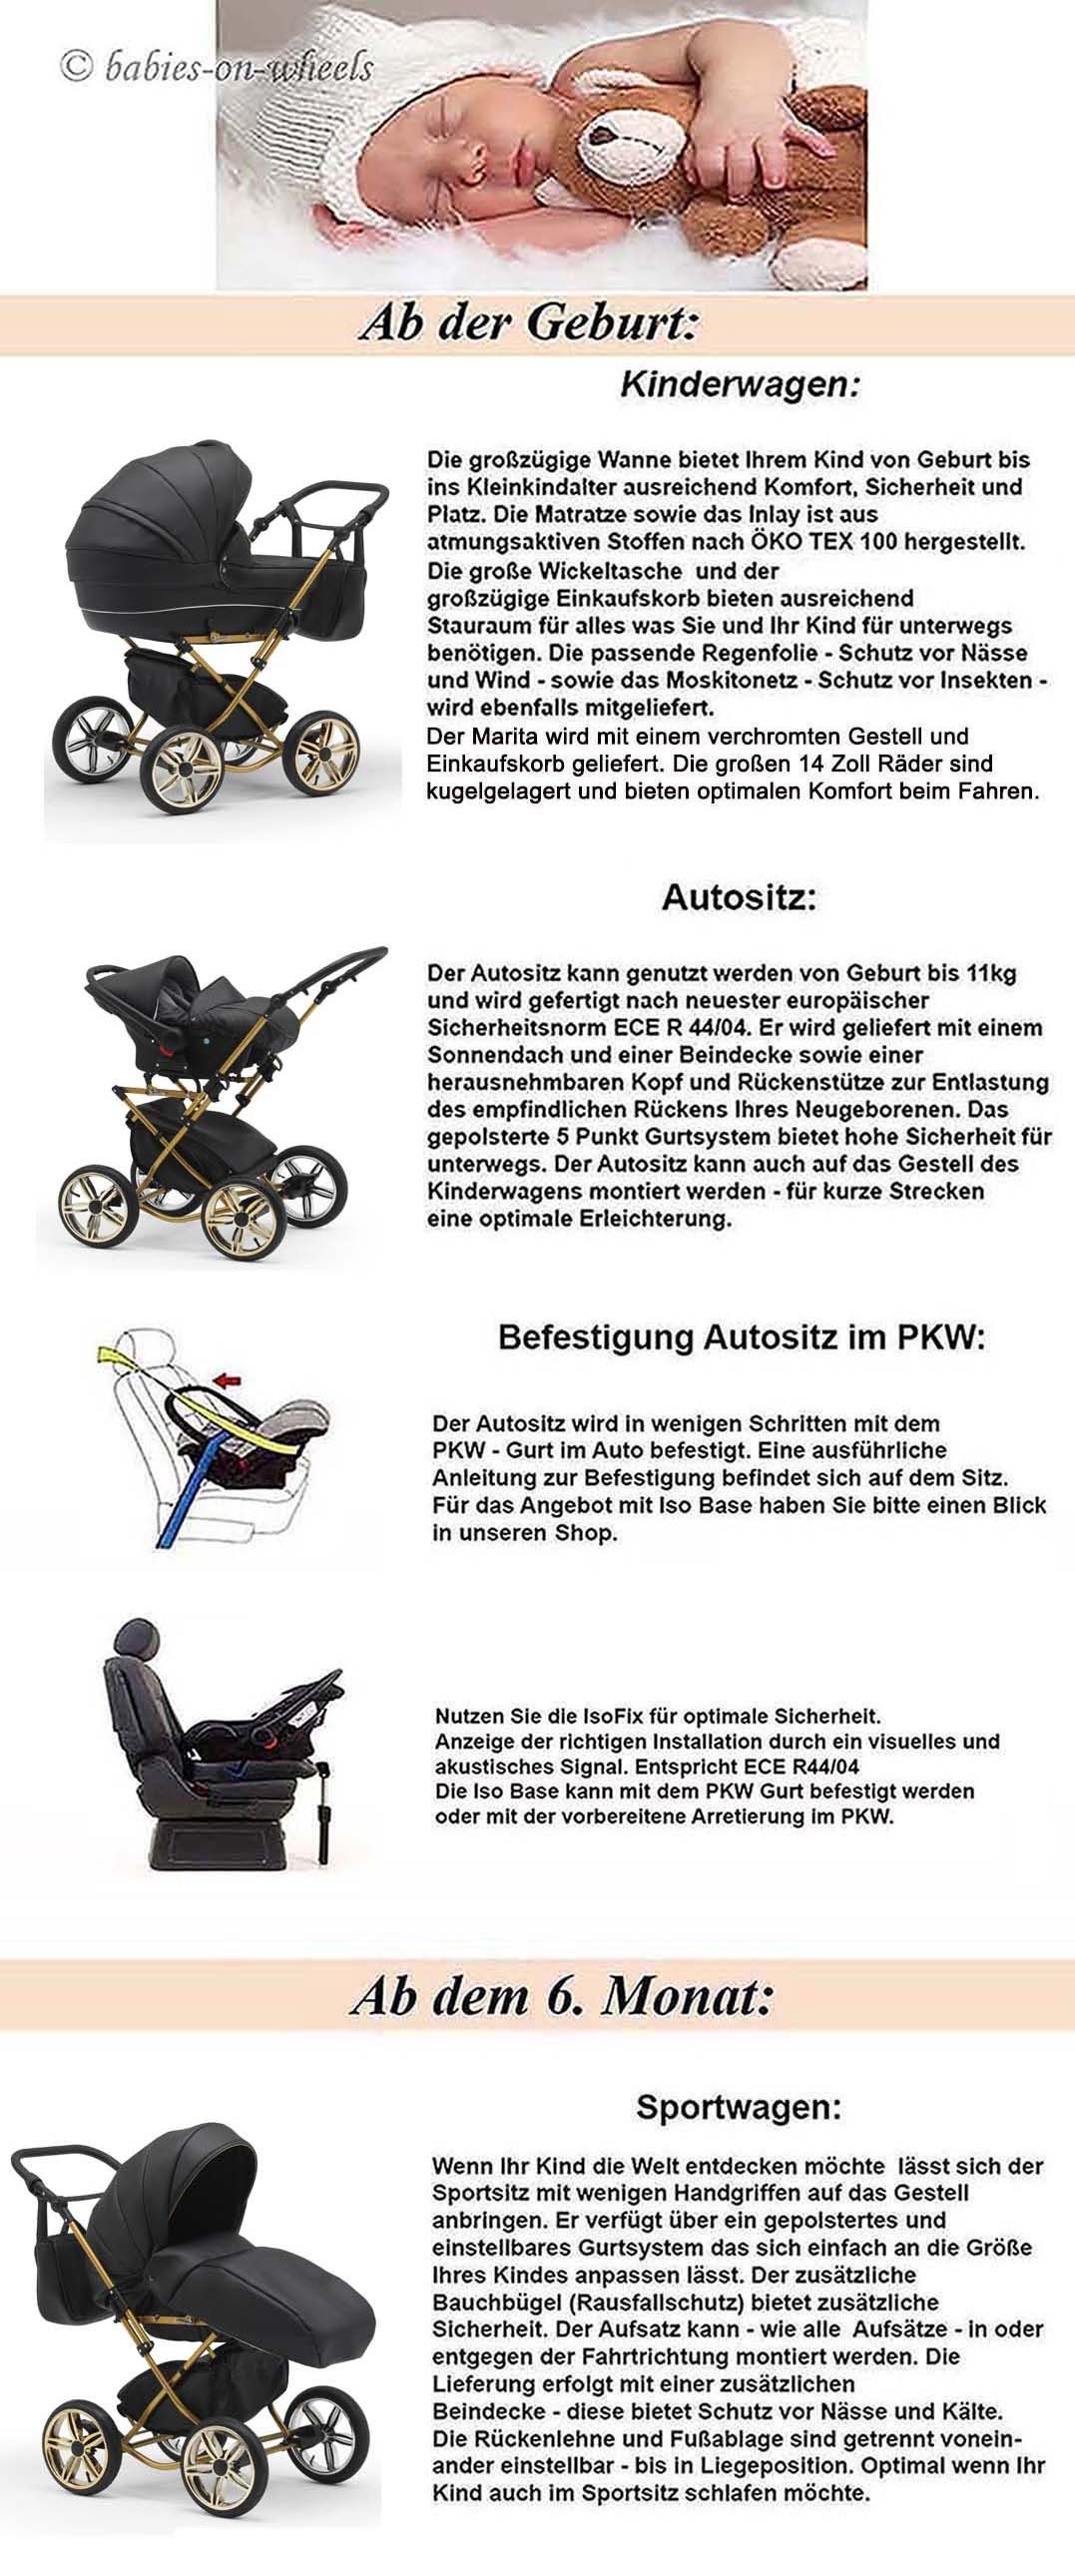 10 in 4 Base Designs - 14 Iso Kombi-Kinderwagen babies-on-wheels Sorento Teile - und Autositz Beige-Braun inkl. 1 in